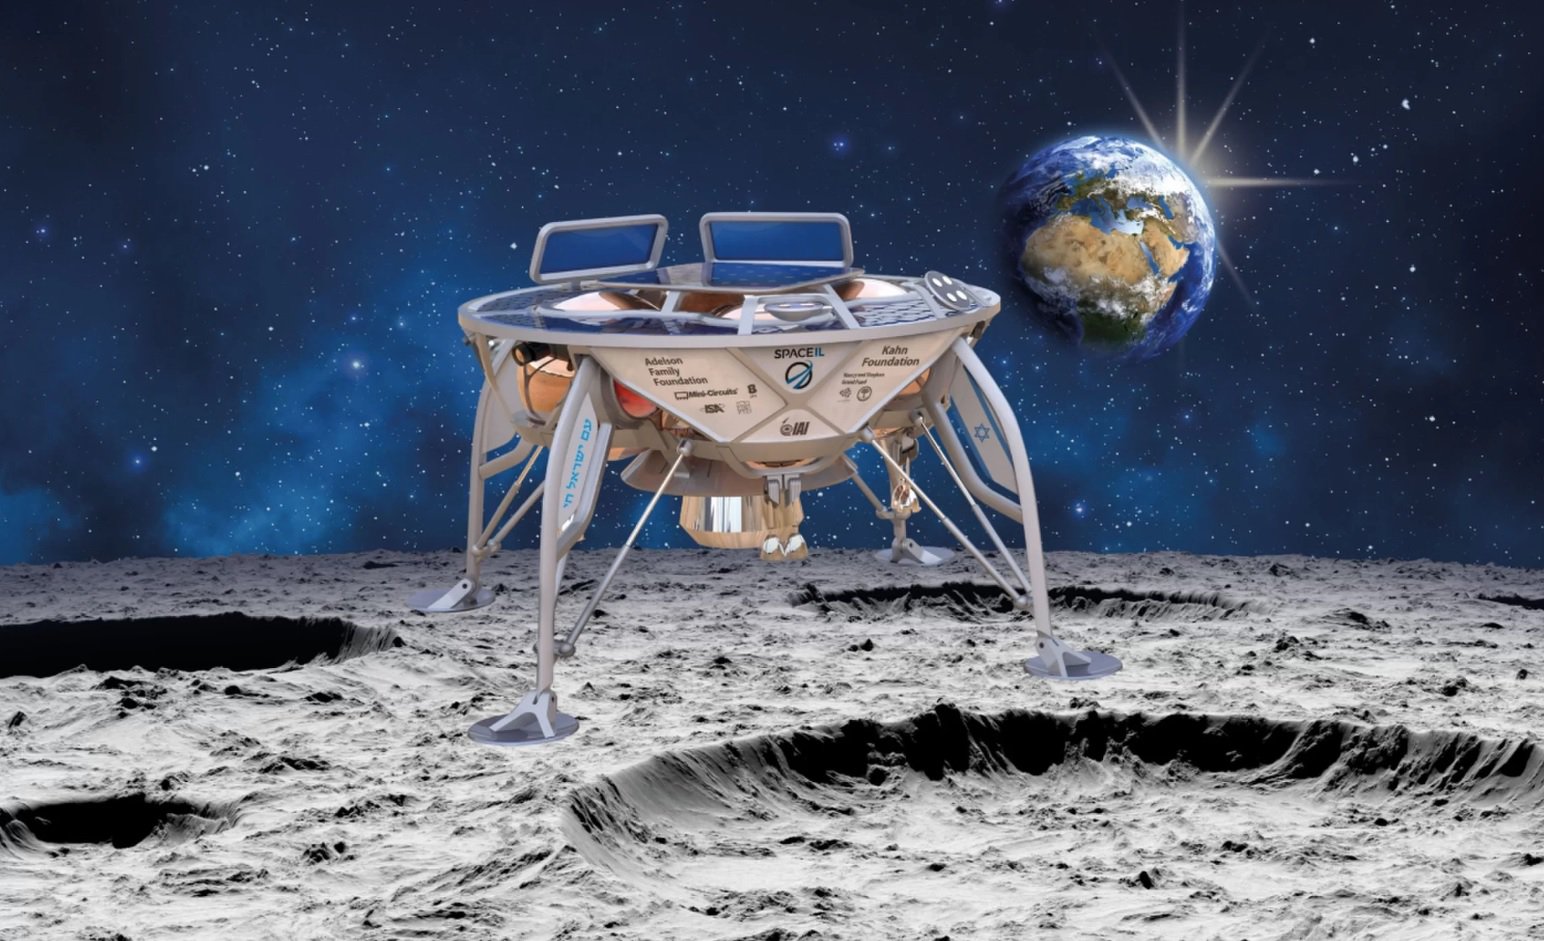 Bis zum Ende dieses Jahres Israel will auf den Mond schicken Lander